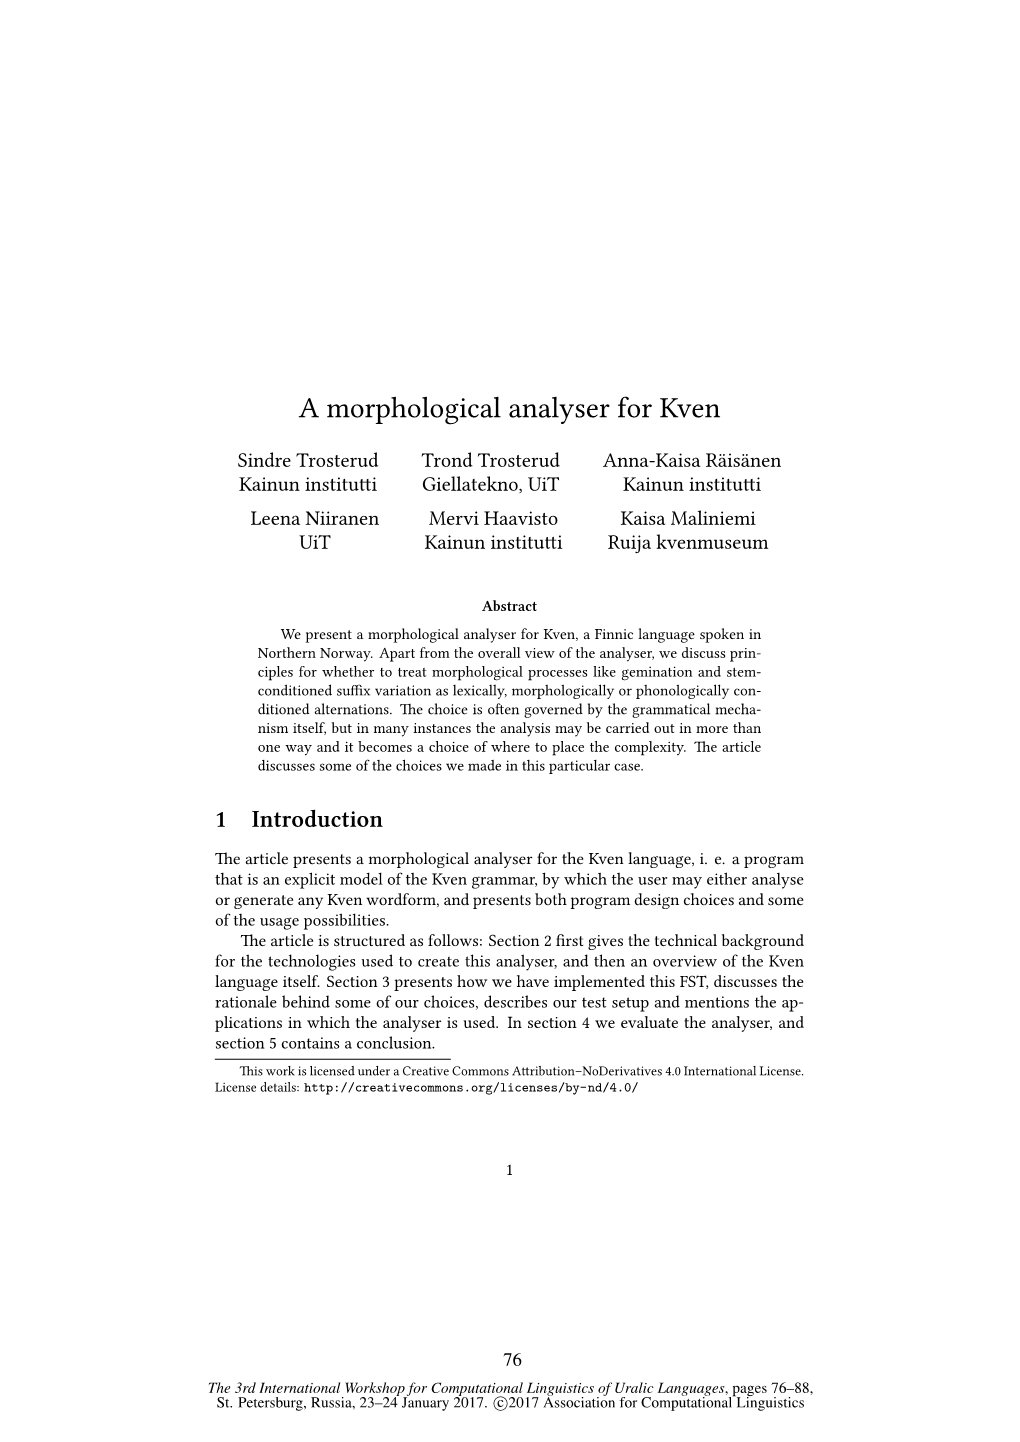 A Morphological Analyser for Kven